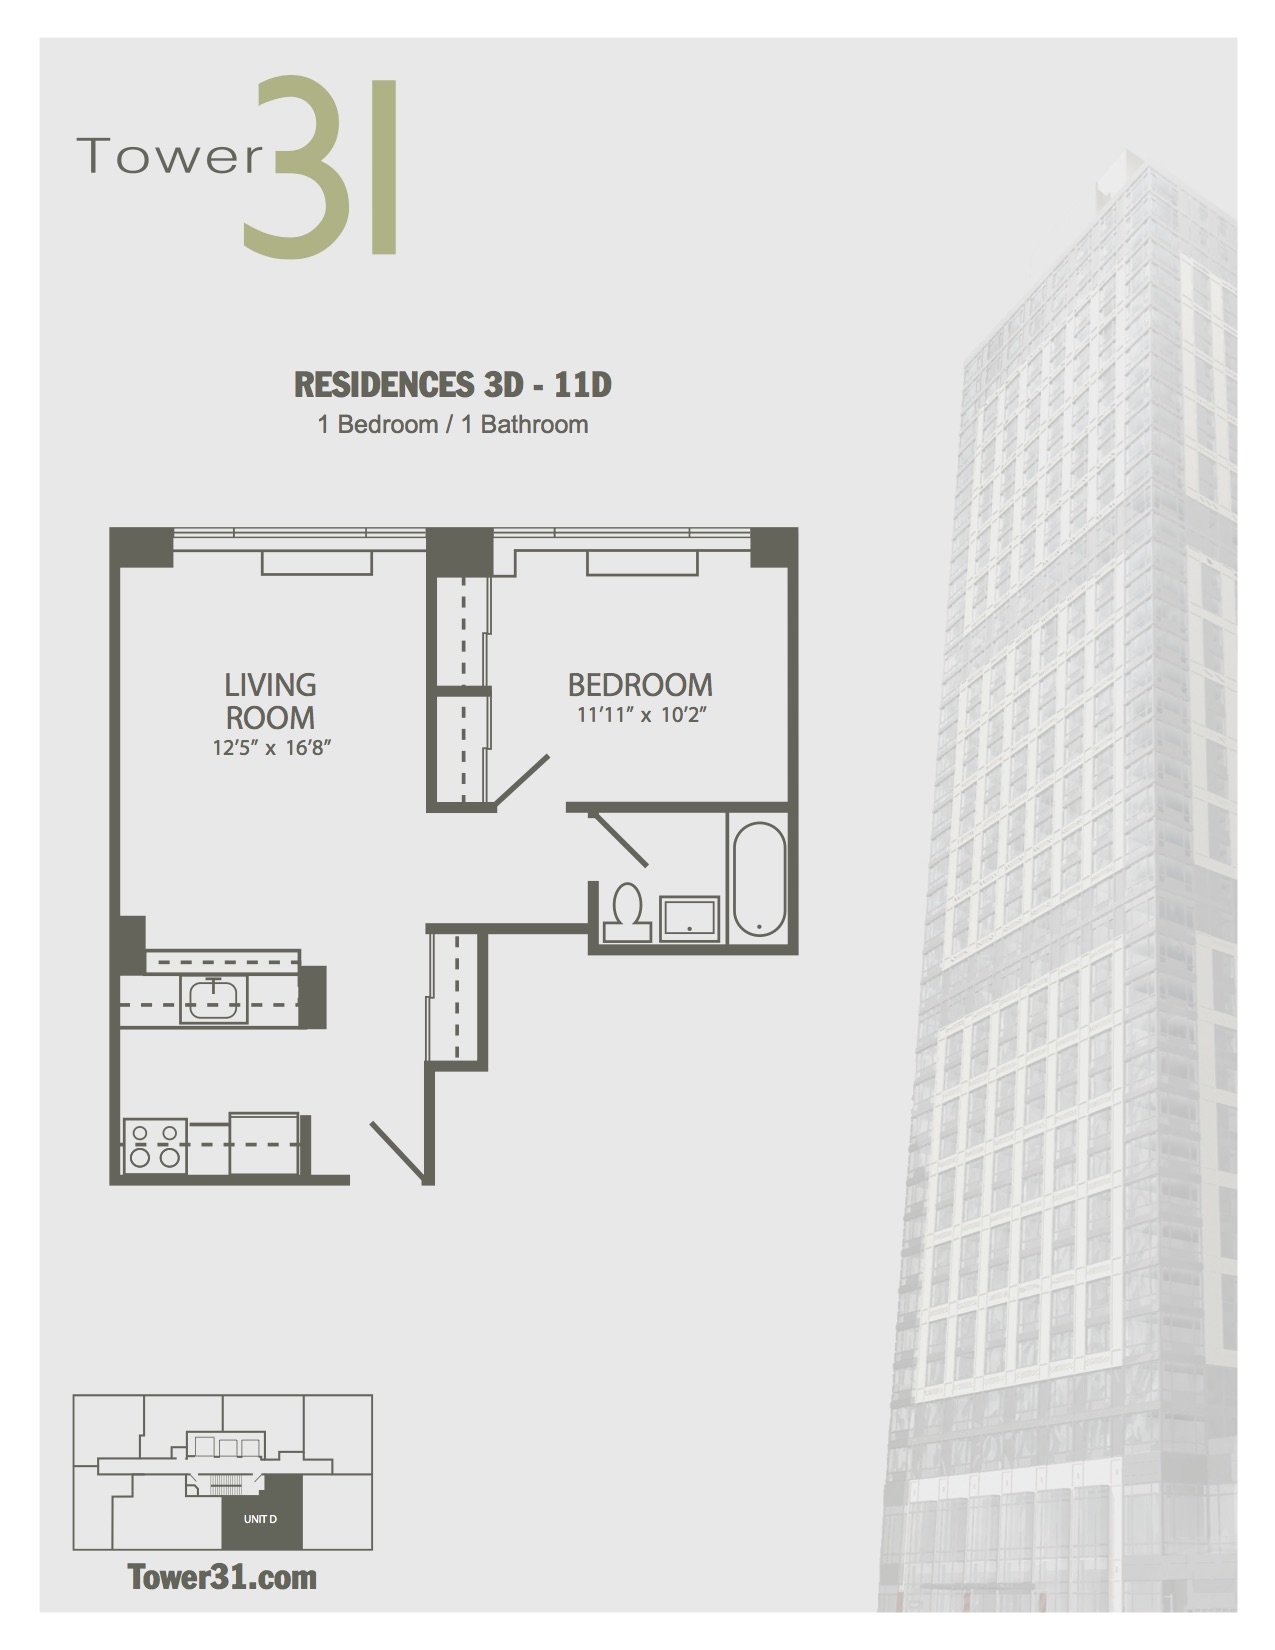 Residence D Floors 3-11